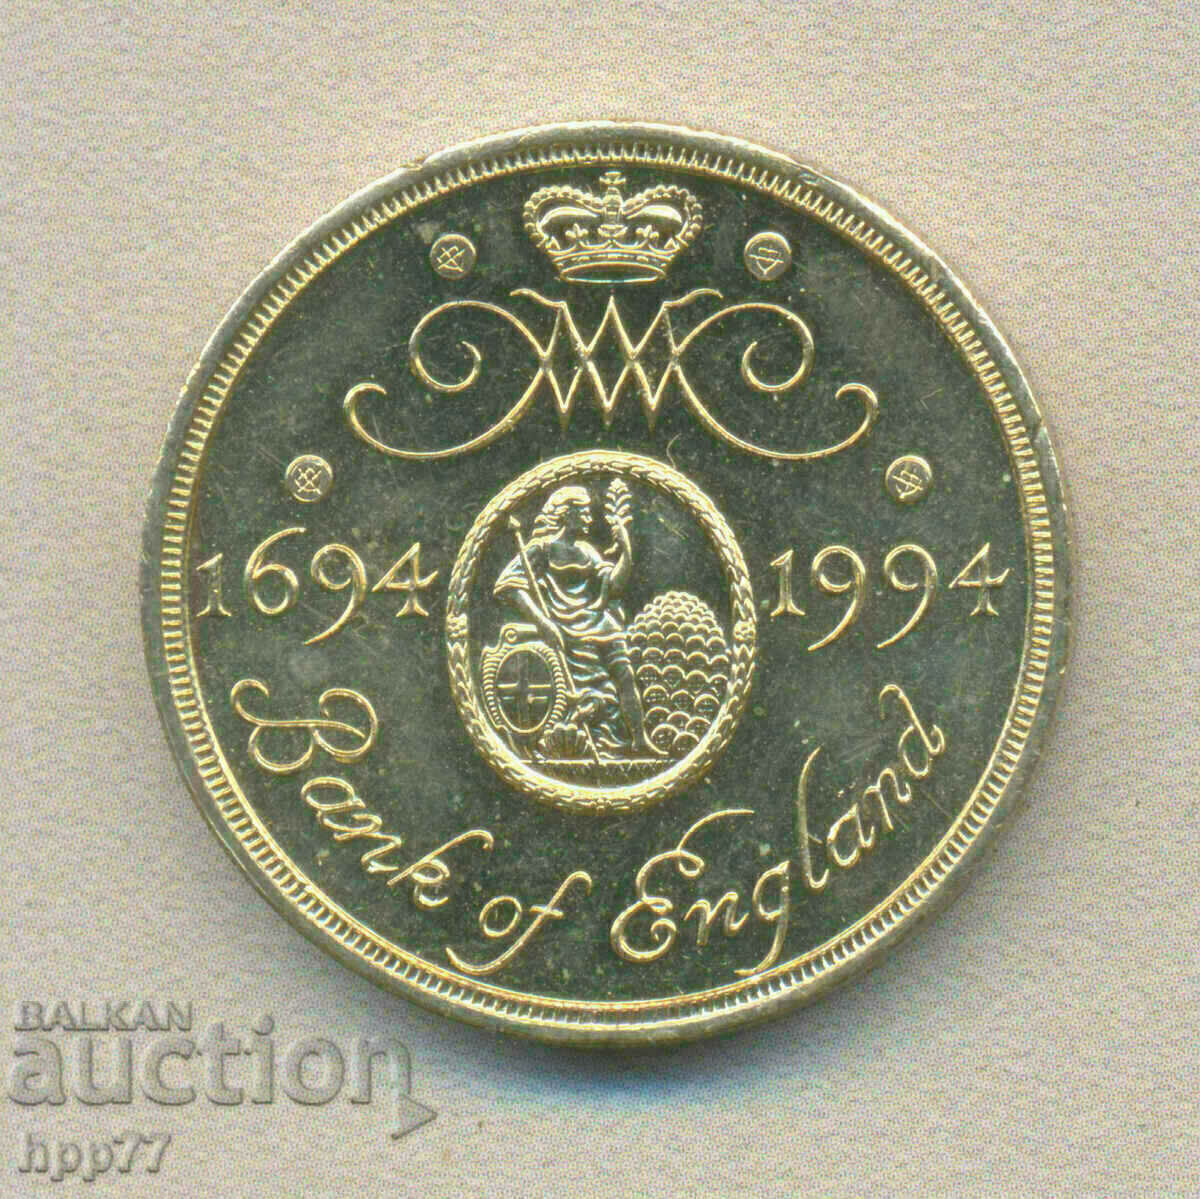 £2 1994 300 years Bank of England